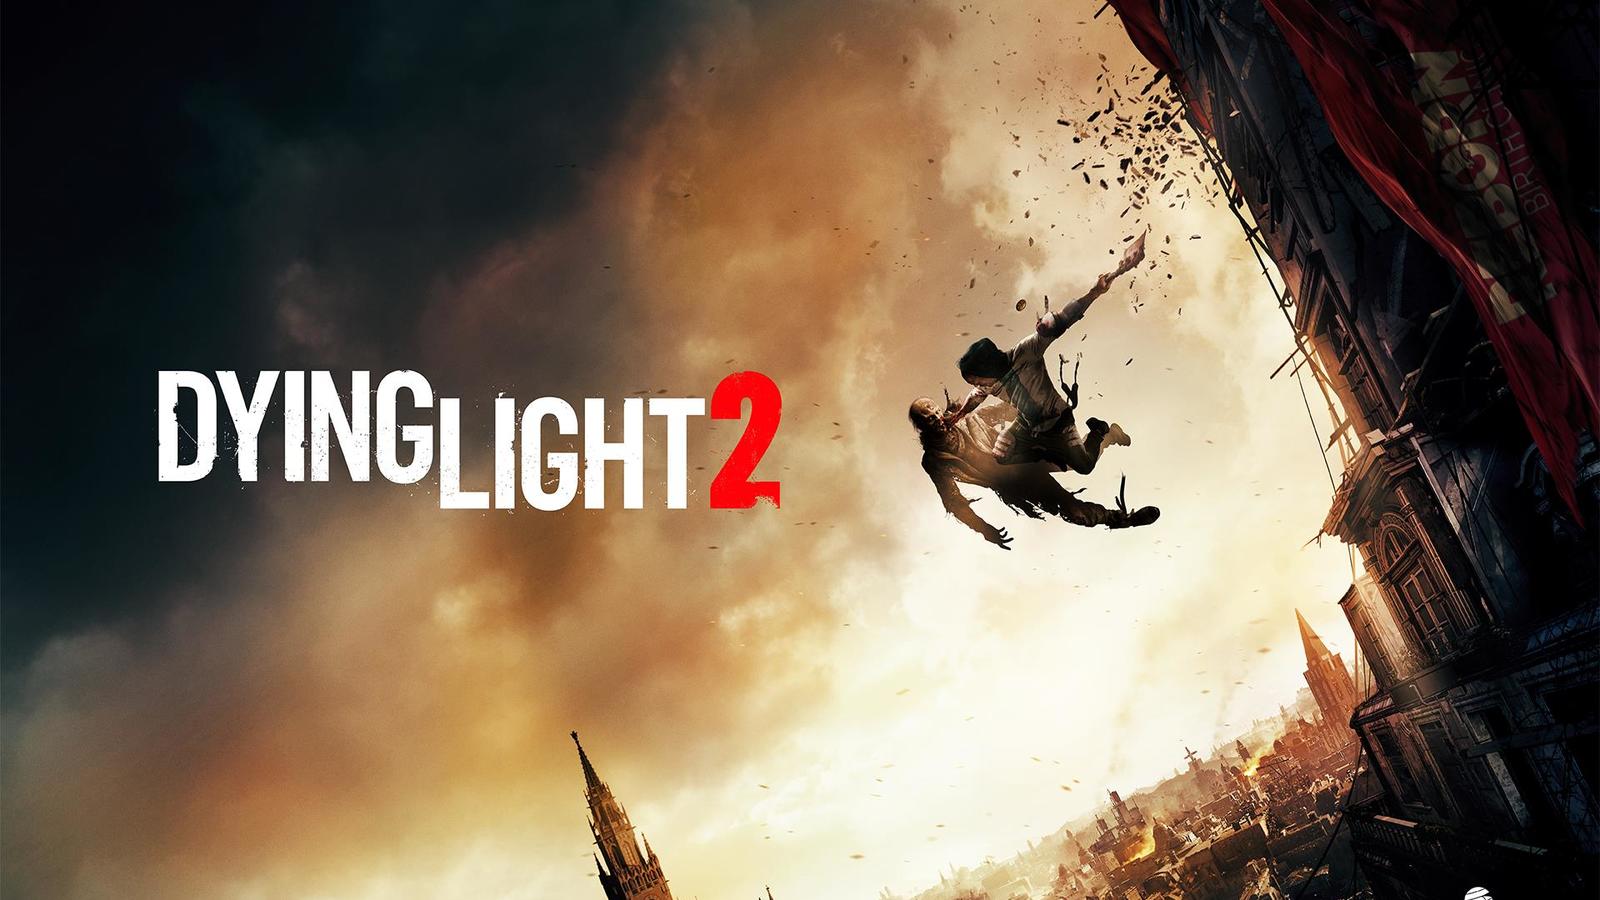 ผู้พัฒนาเผย! Dying Light 2 จะใช้เวลาถึง 500 ชั่วโมงในการเล่นให้เสร็จครบสมบูรณ์